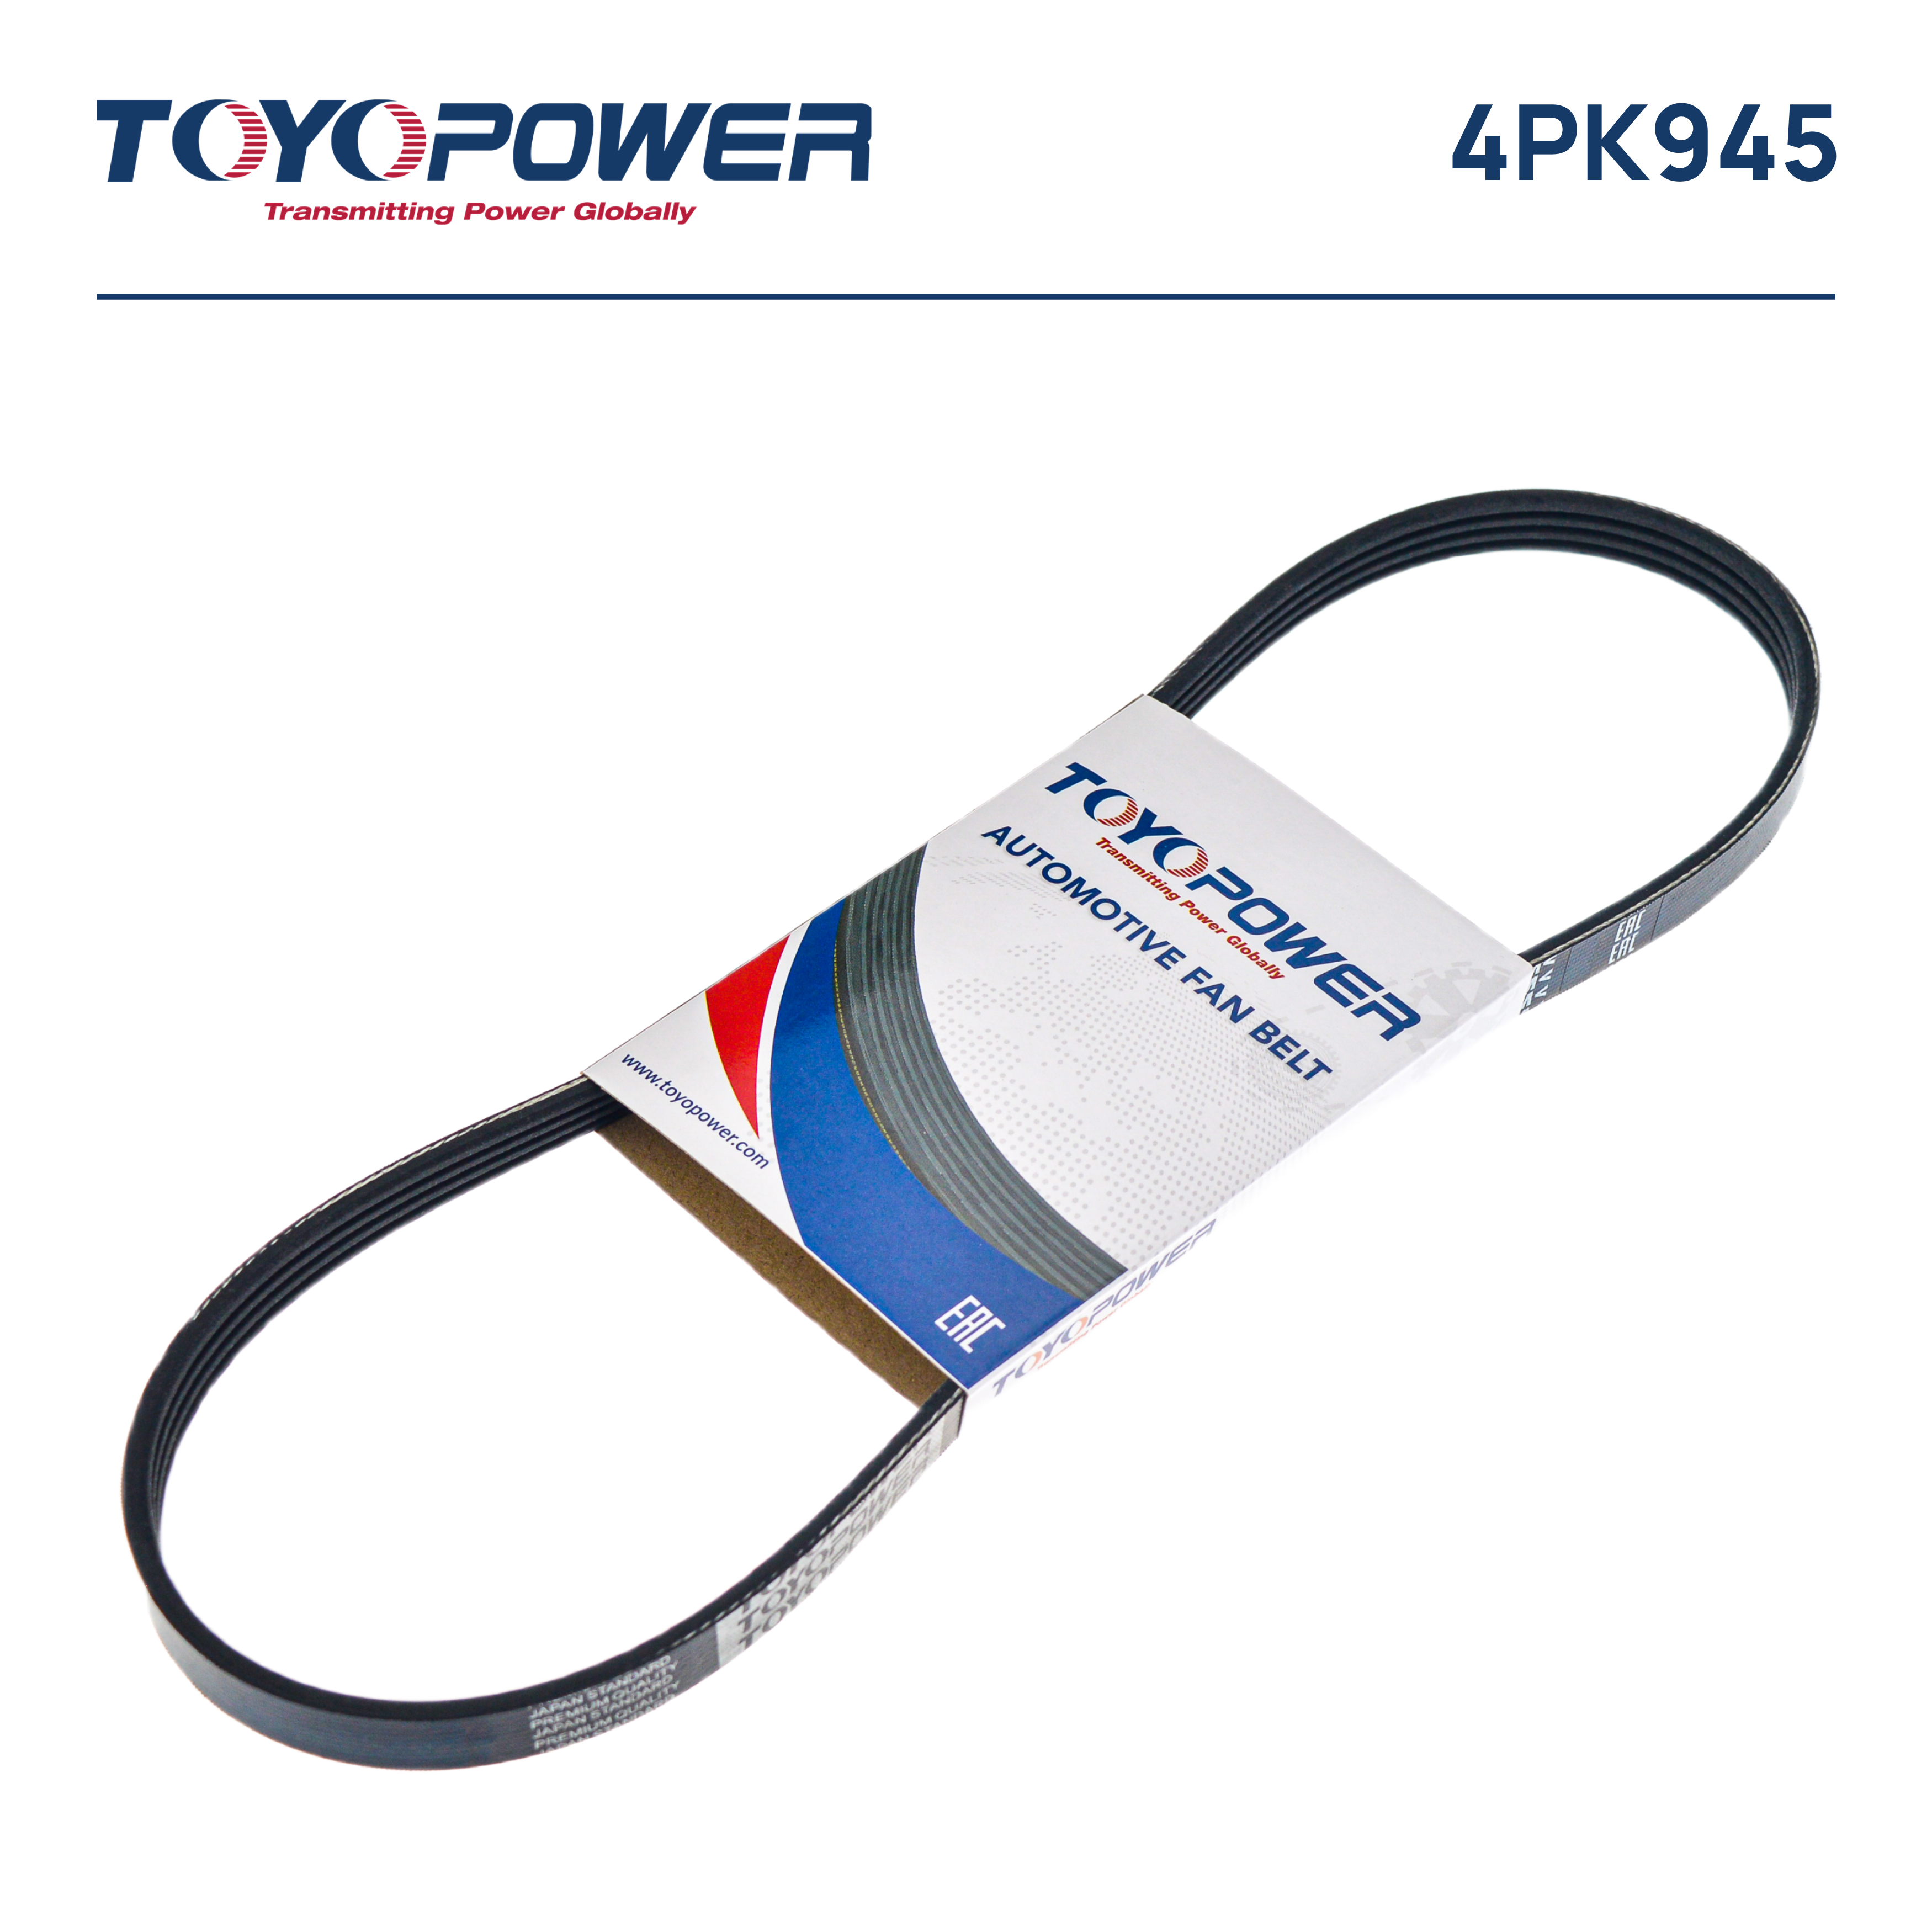 Ремень поликлиновый - Toyopower 4PK945